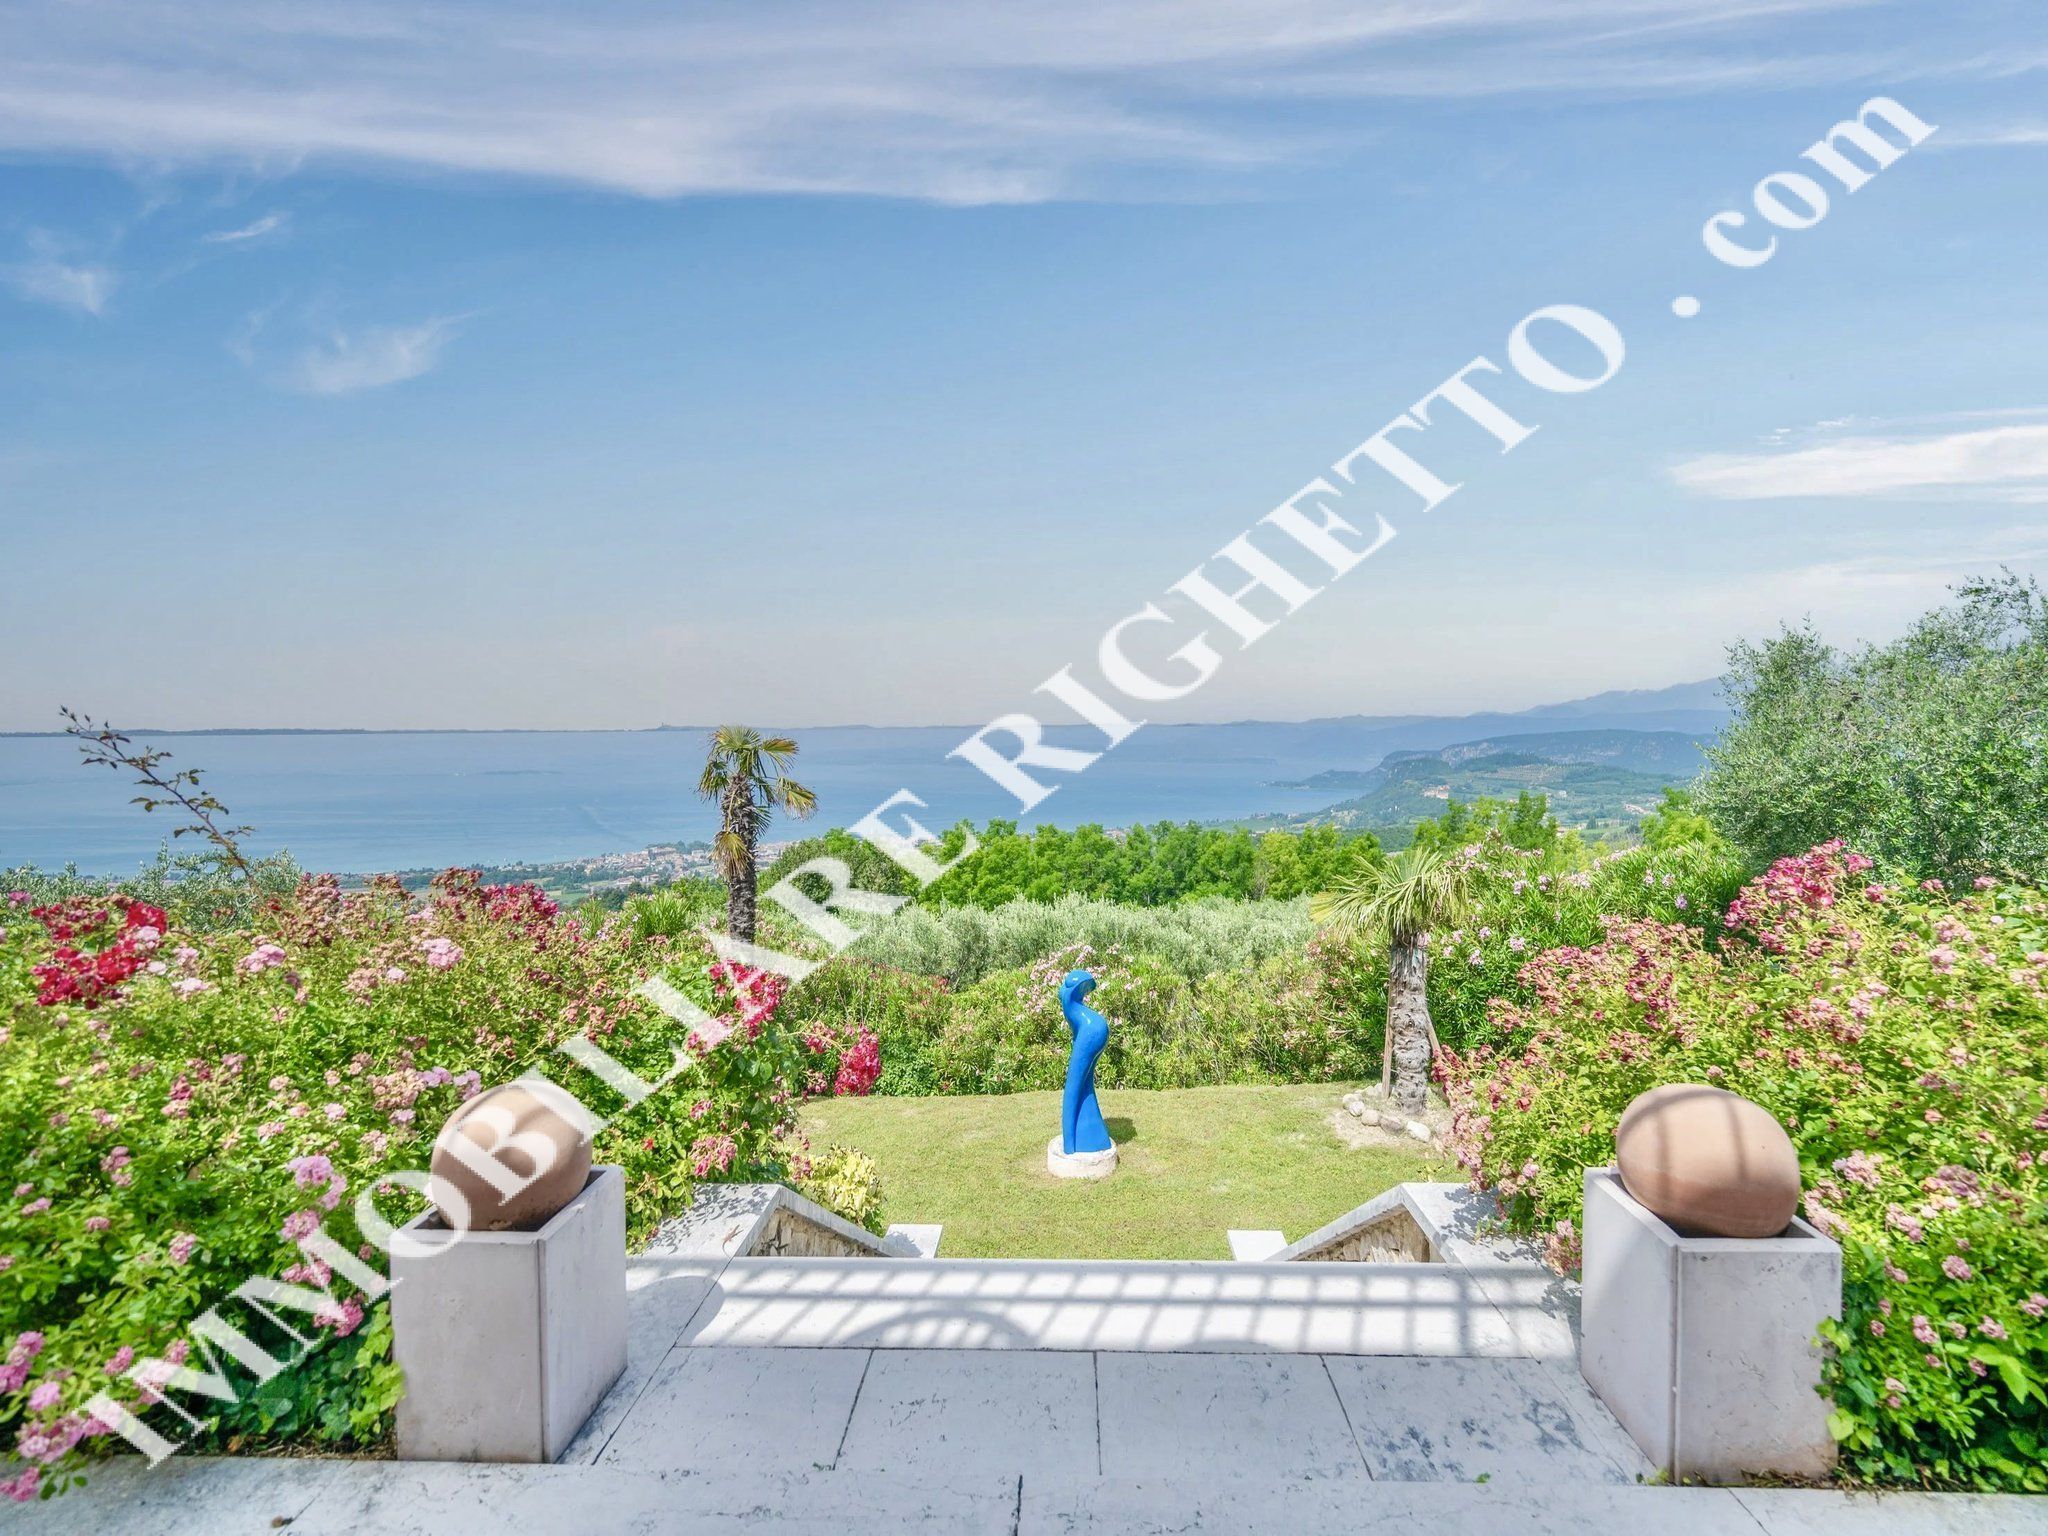 bieten Immobilien zum Verkauf Herrliche freistehende Villa mit glanzvollem 180° PANORAMABLICK AUF DEN SEE